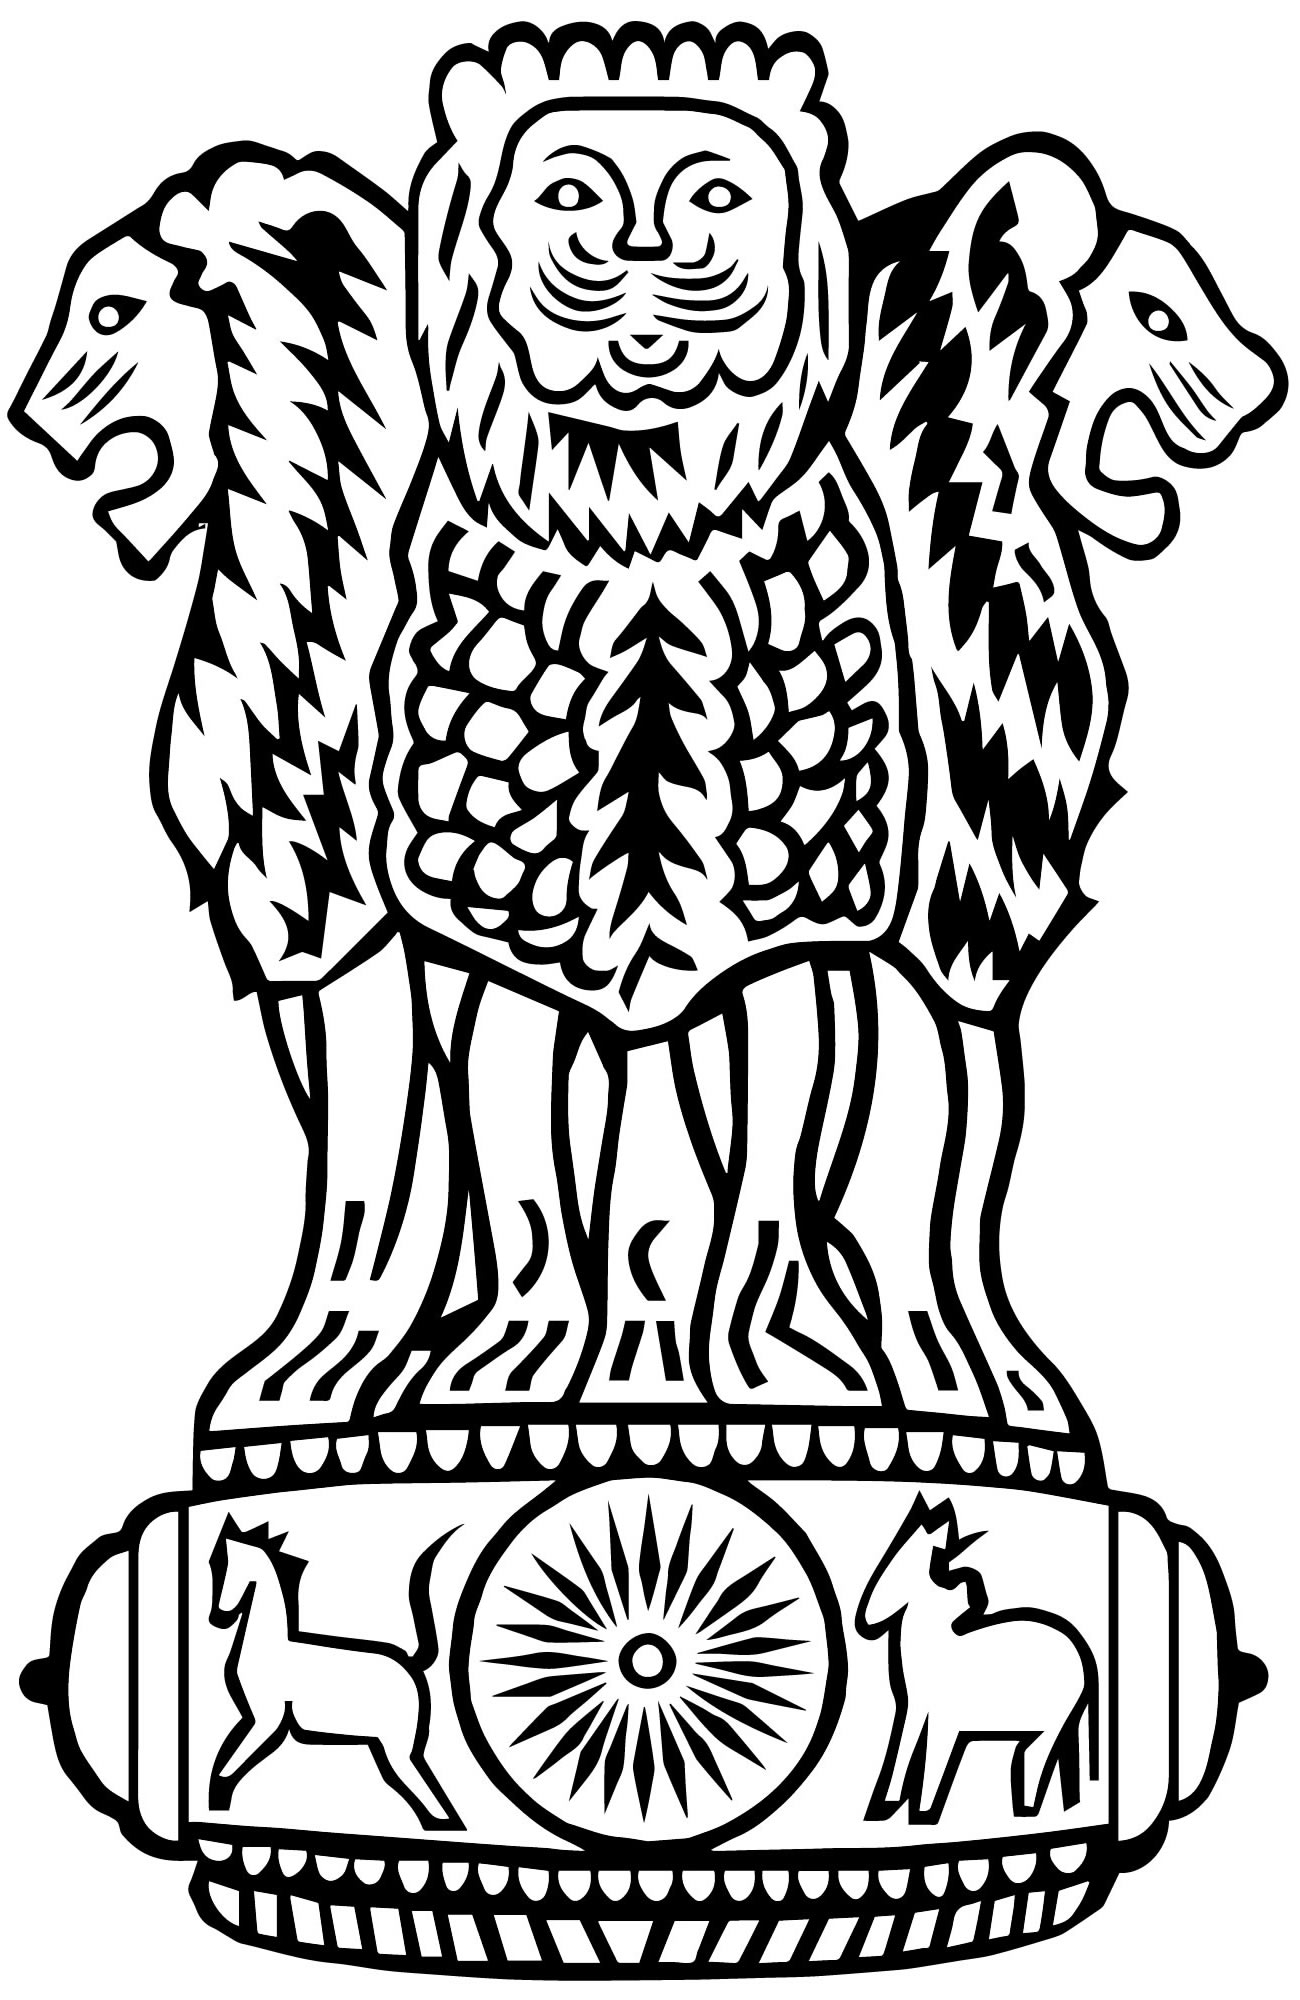 Герб индии на